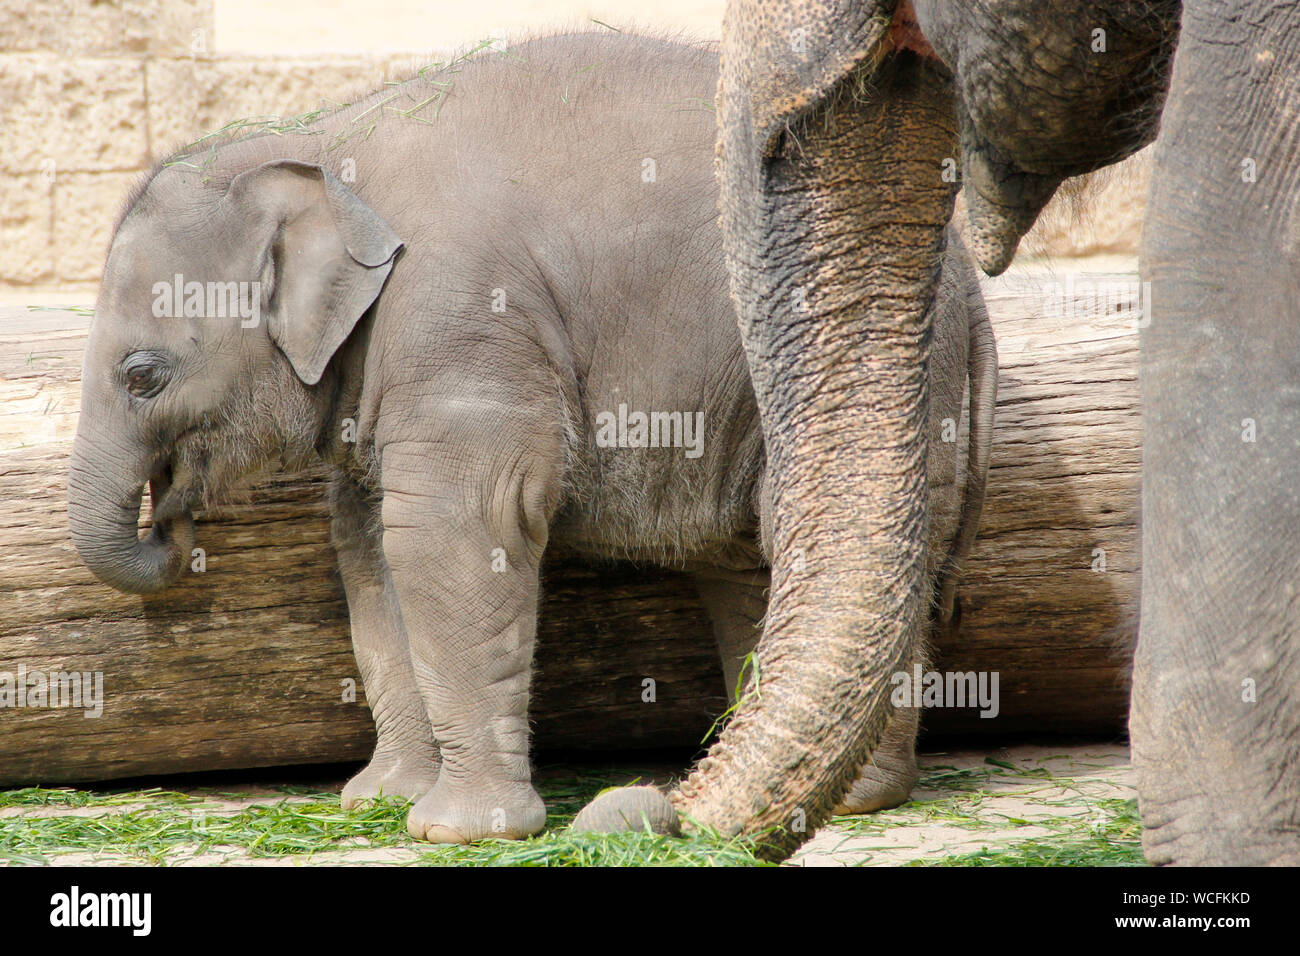 little Indian elephant playing, Latin Elephas maximus indicus Stock Photo